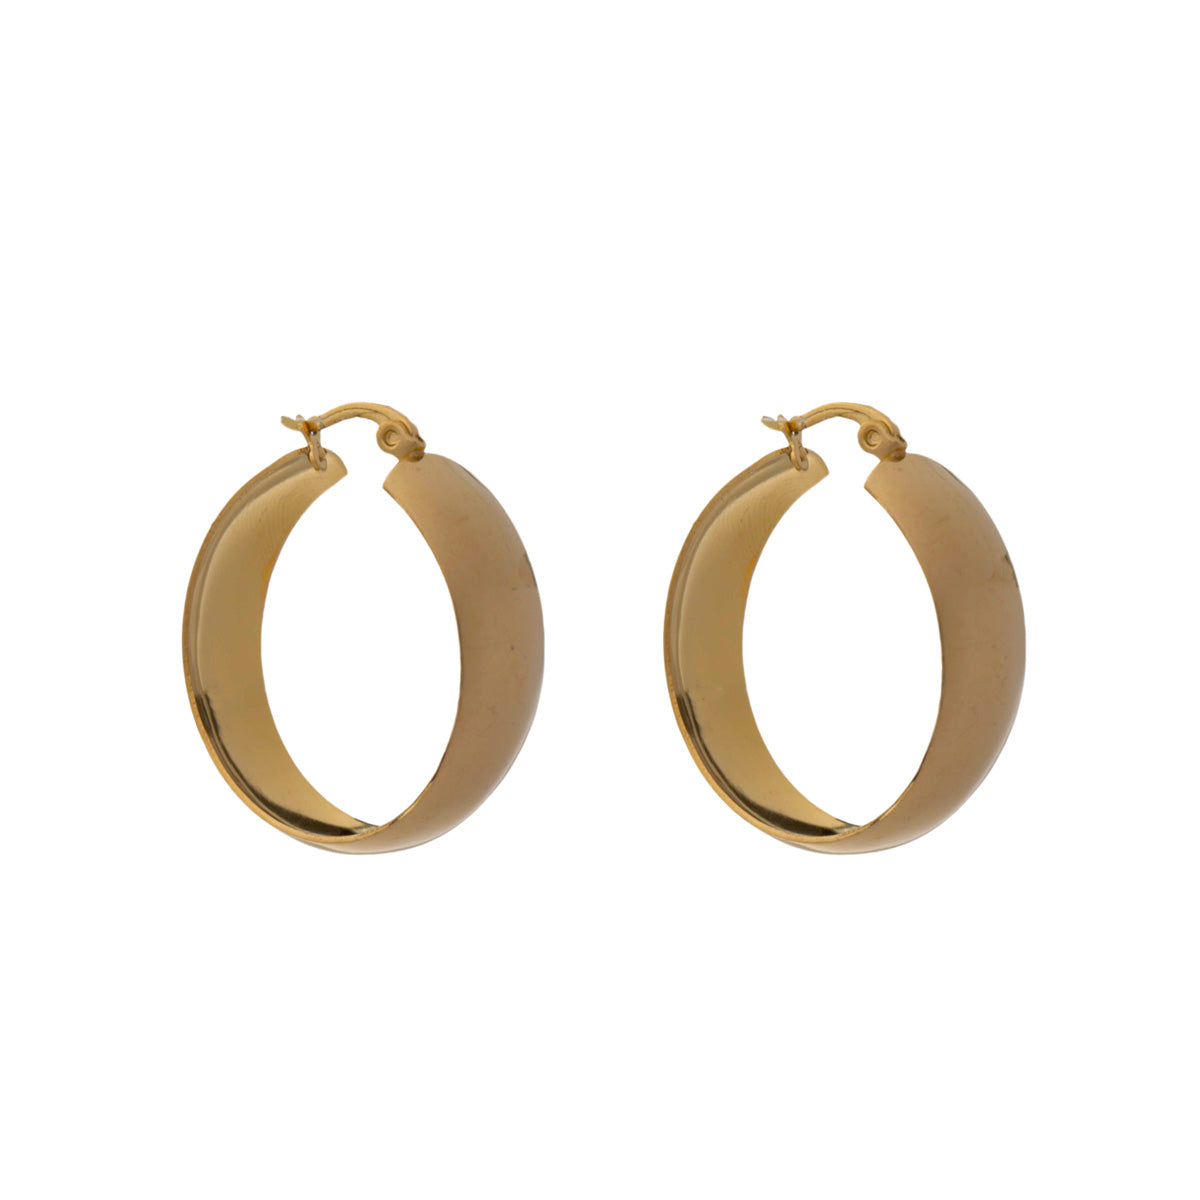 Wide steel ring earring 0,9cm ø3,3cm